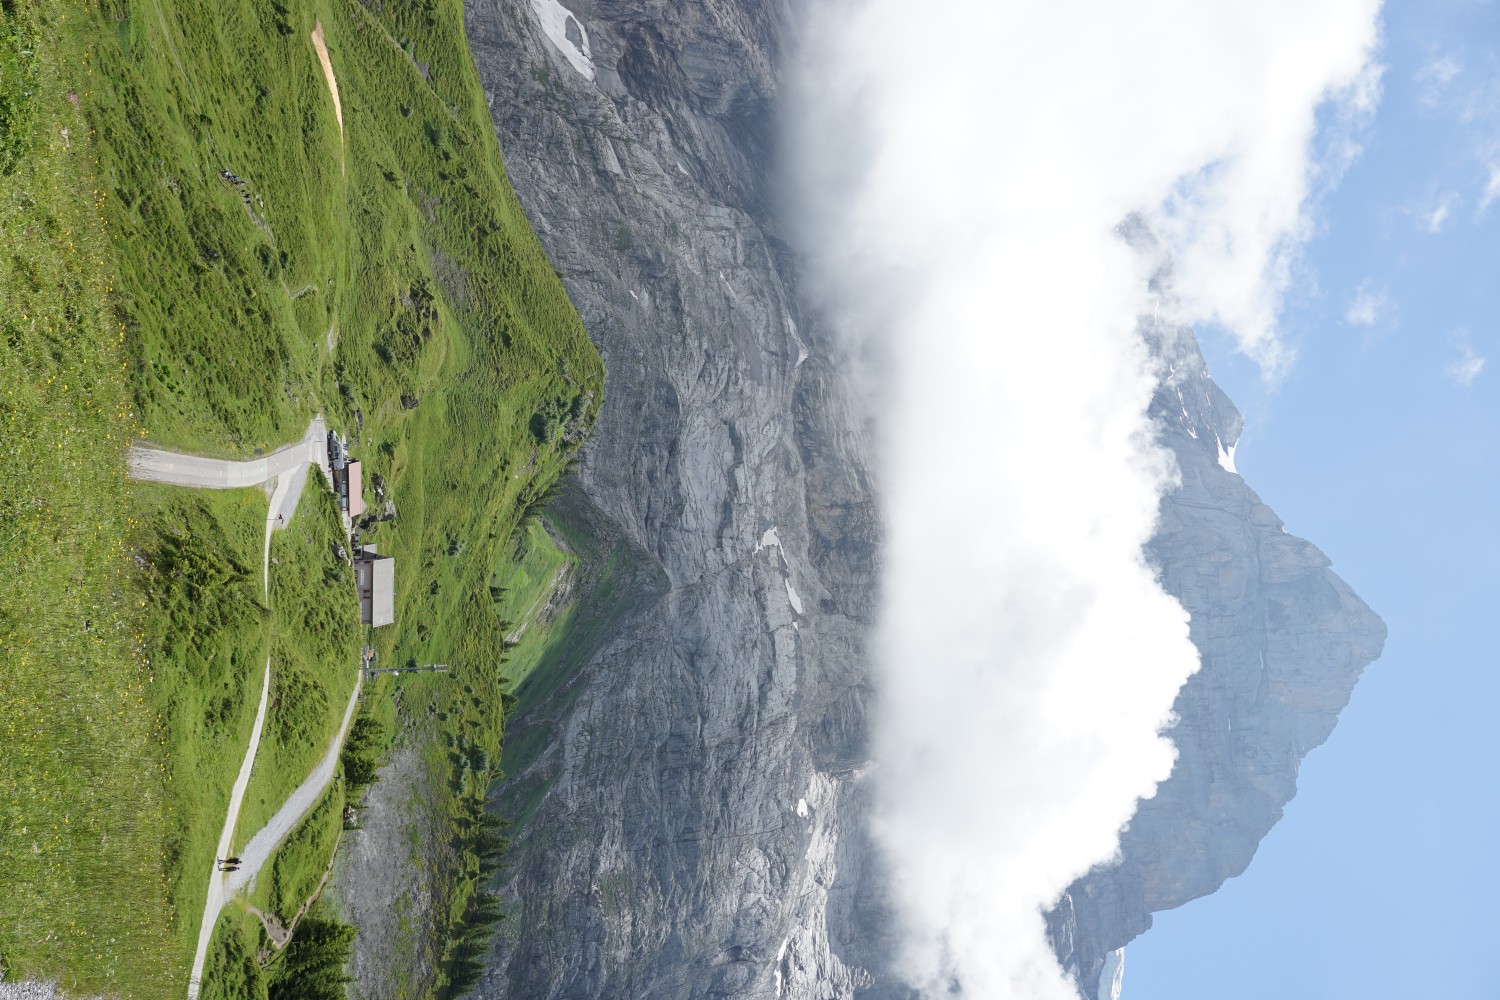 L’arrivée à la Grande Scheidegg, avec le Wetterhorn au loin. Photo: Reto Wissmann